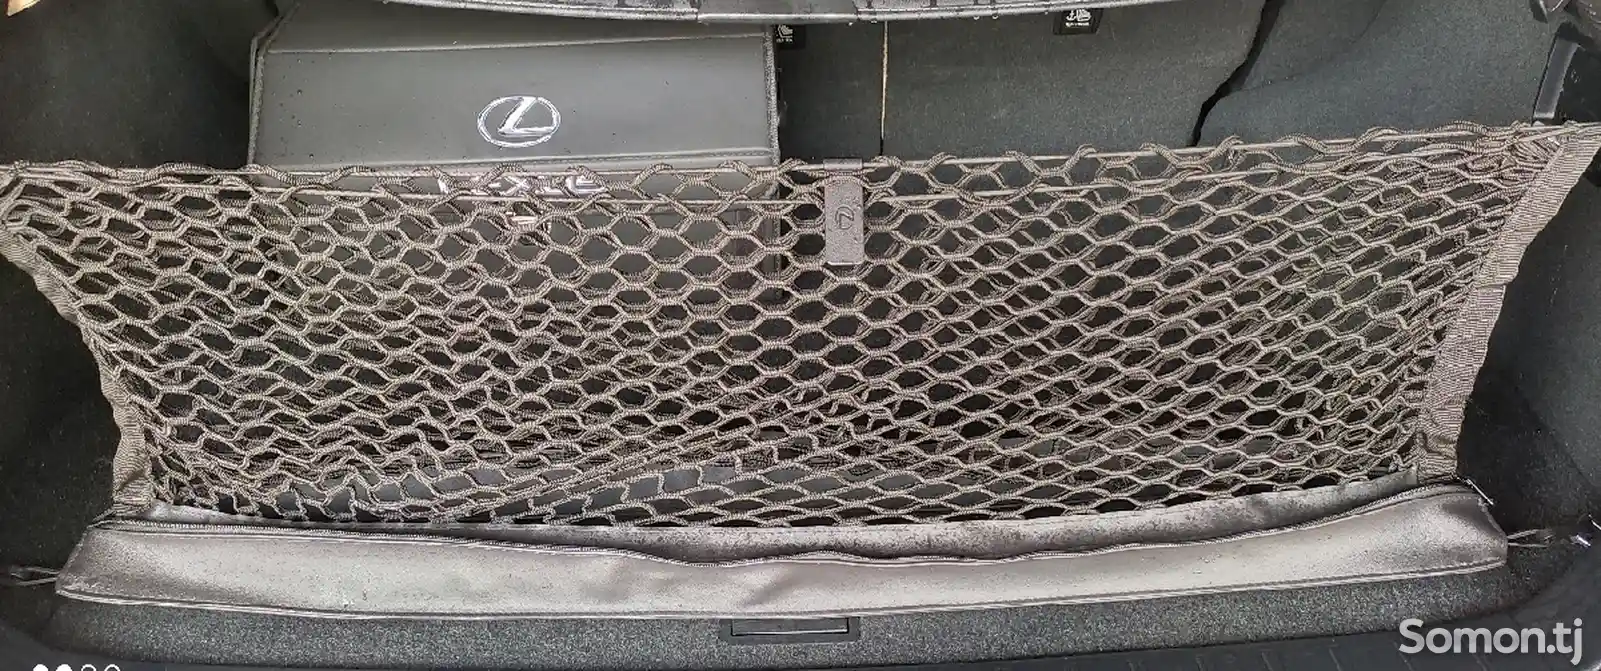 Сетка в багажник кроссовера Lexus-1